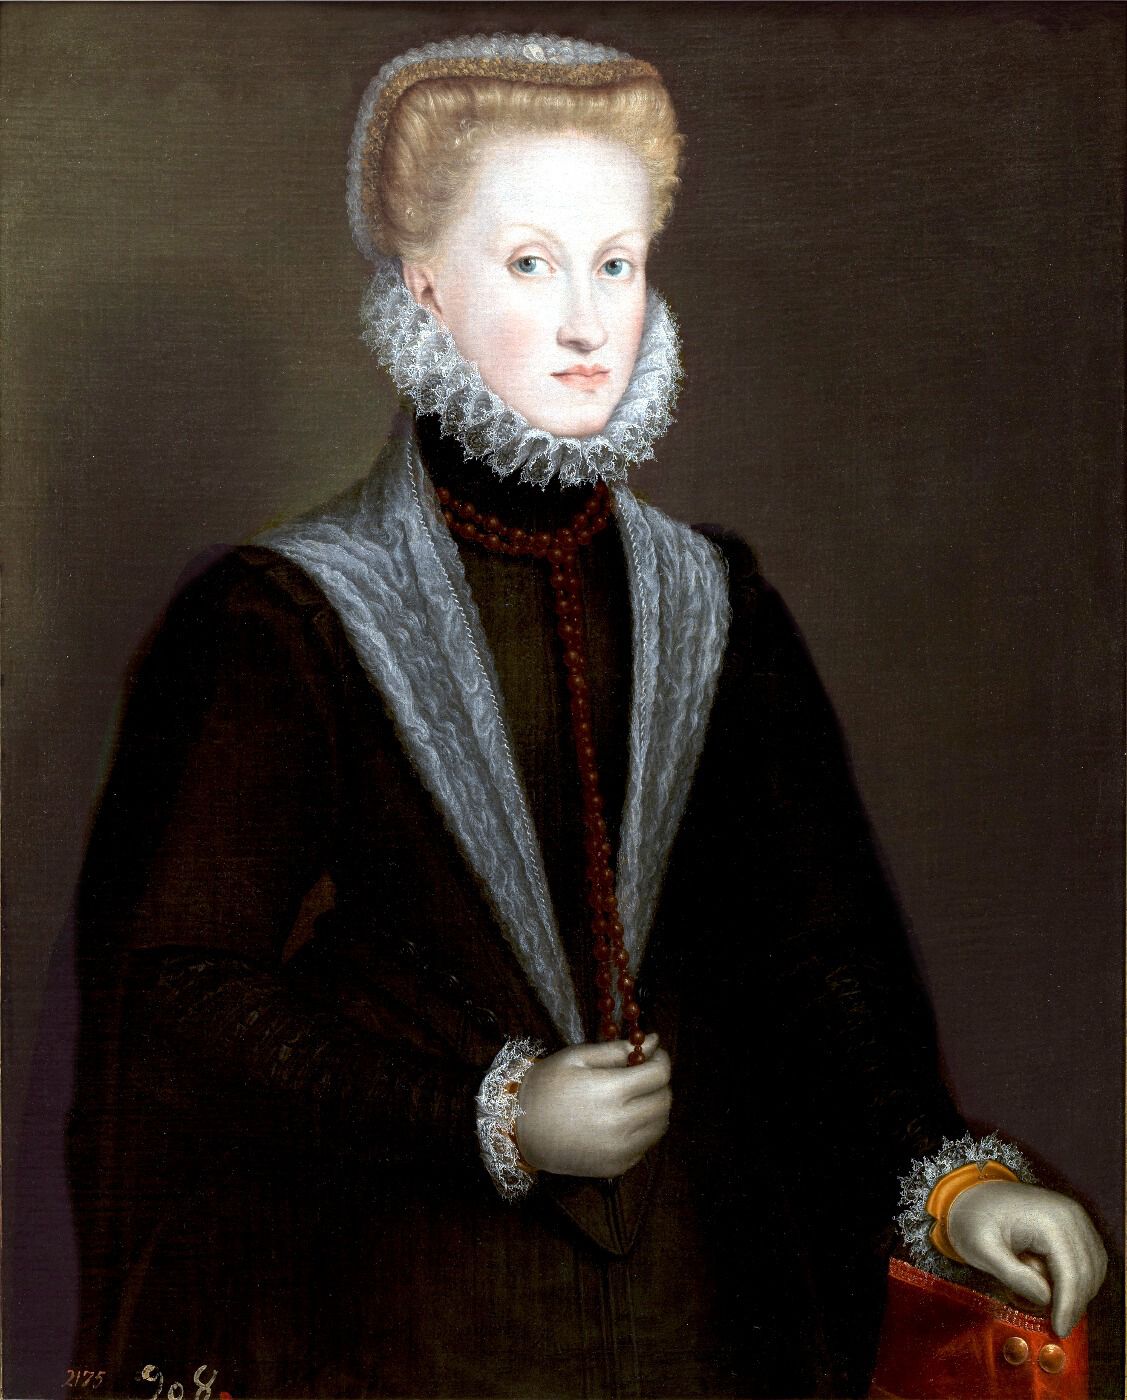 Retrato de la reina Ana de Austria de Sofonisba Anguissola